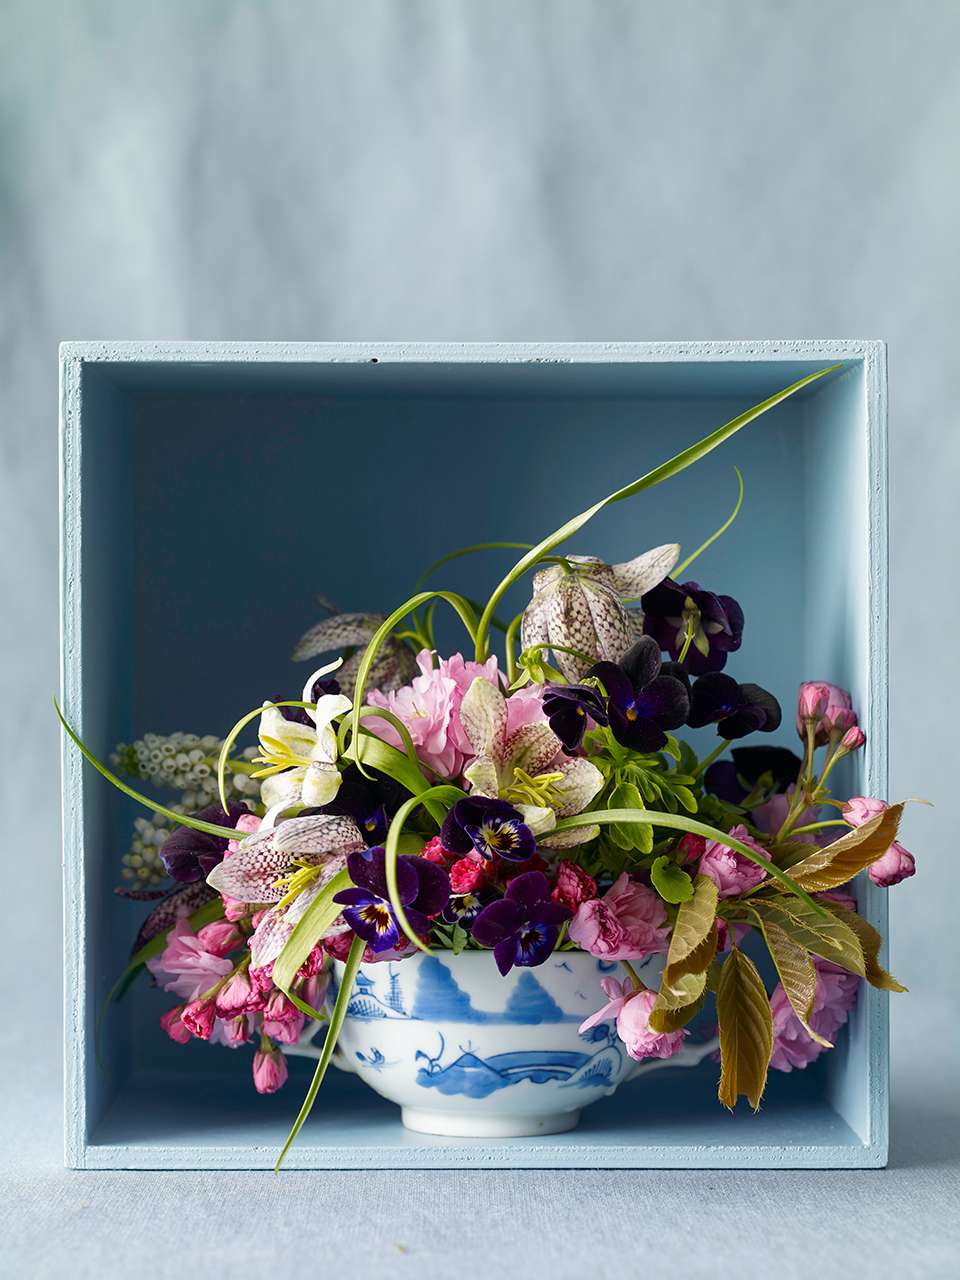 Dutch delft gravy bowl floral arrangement